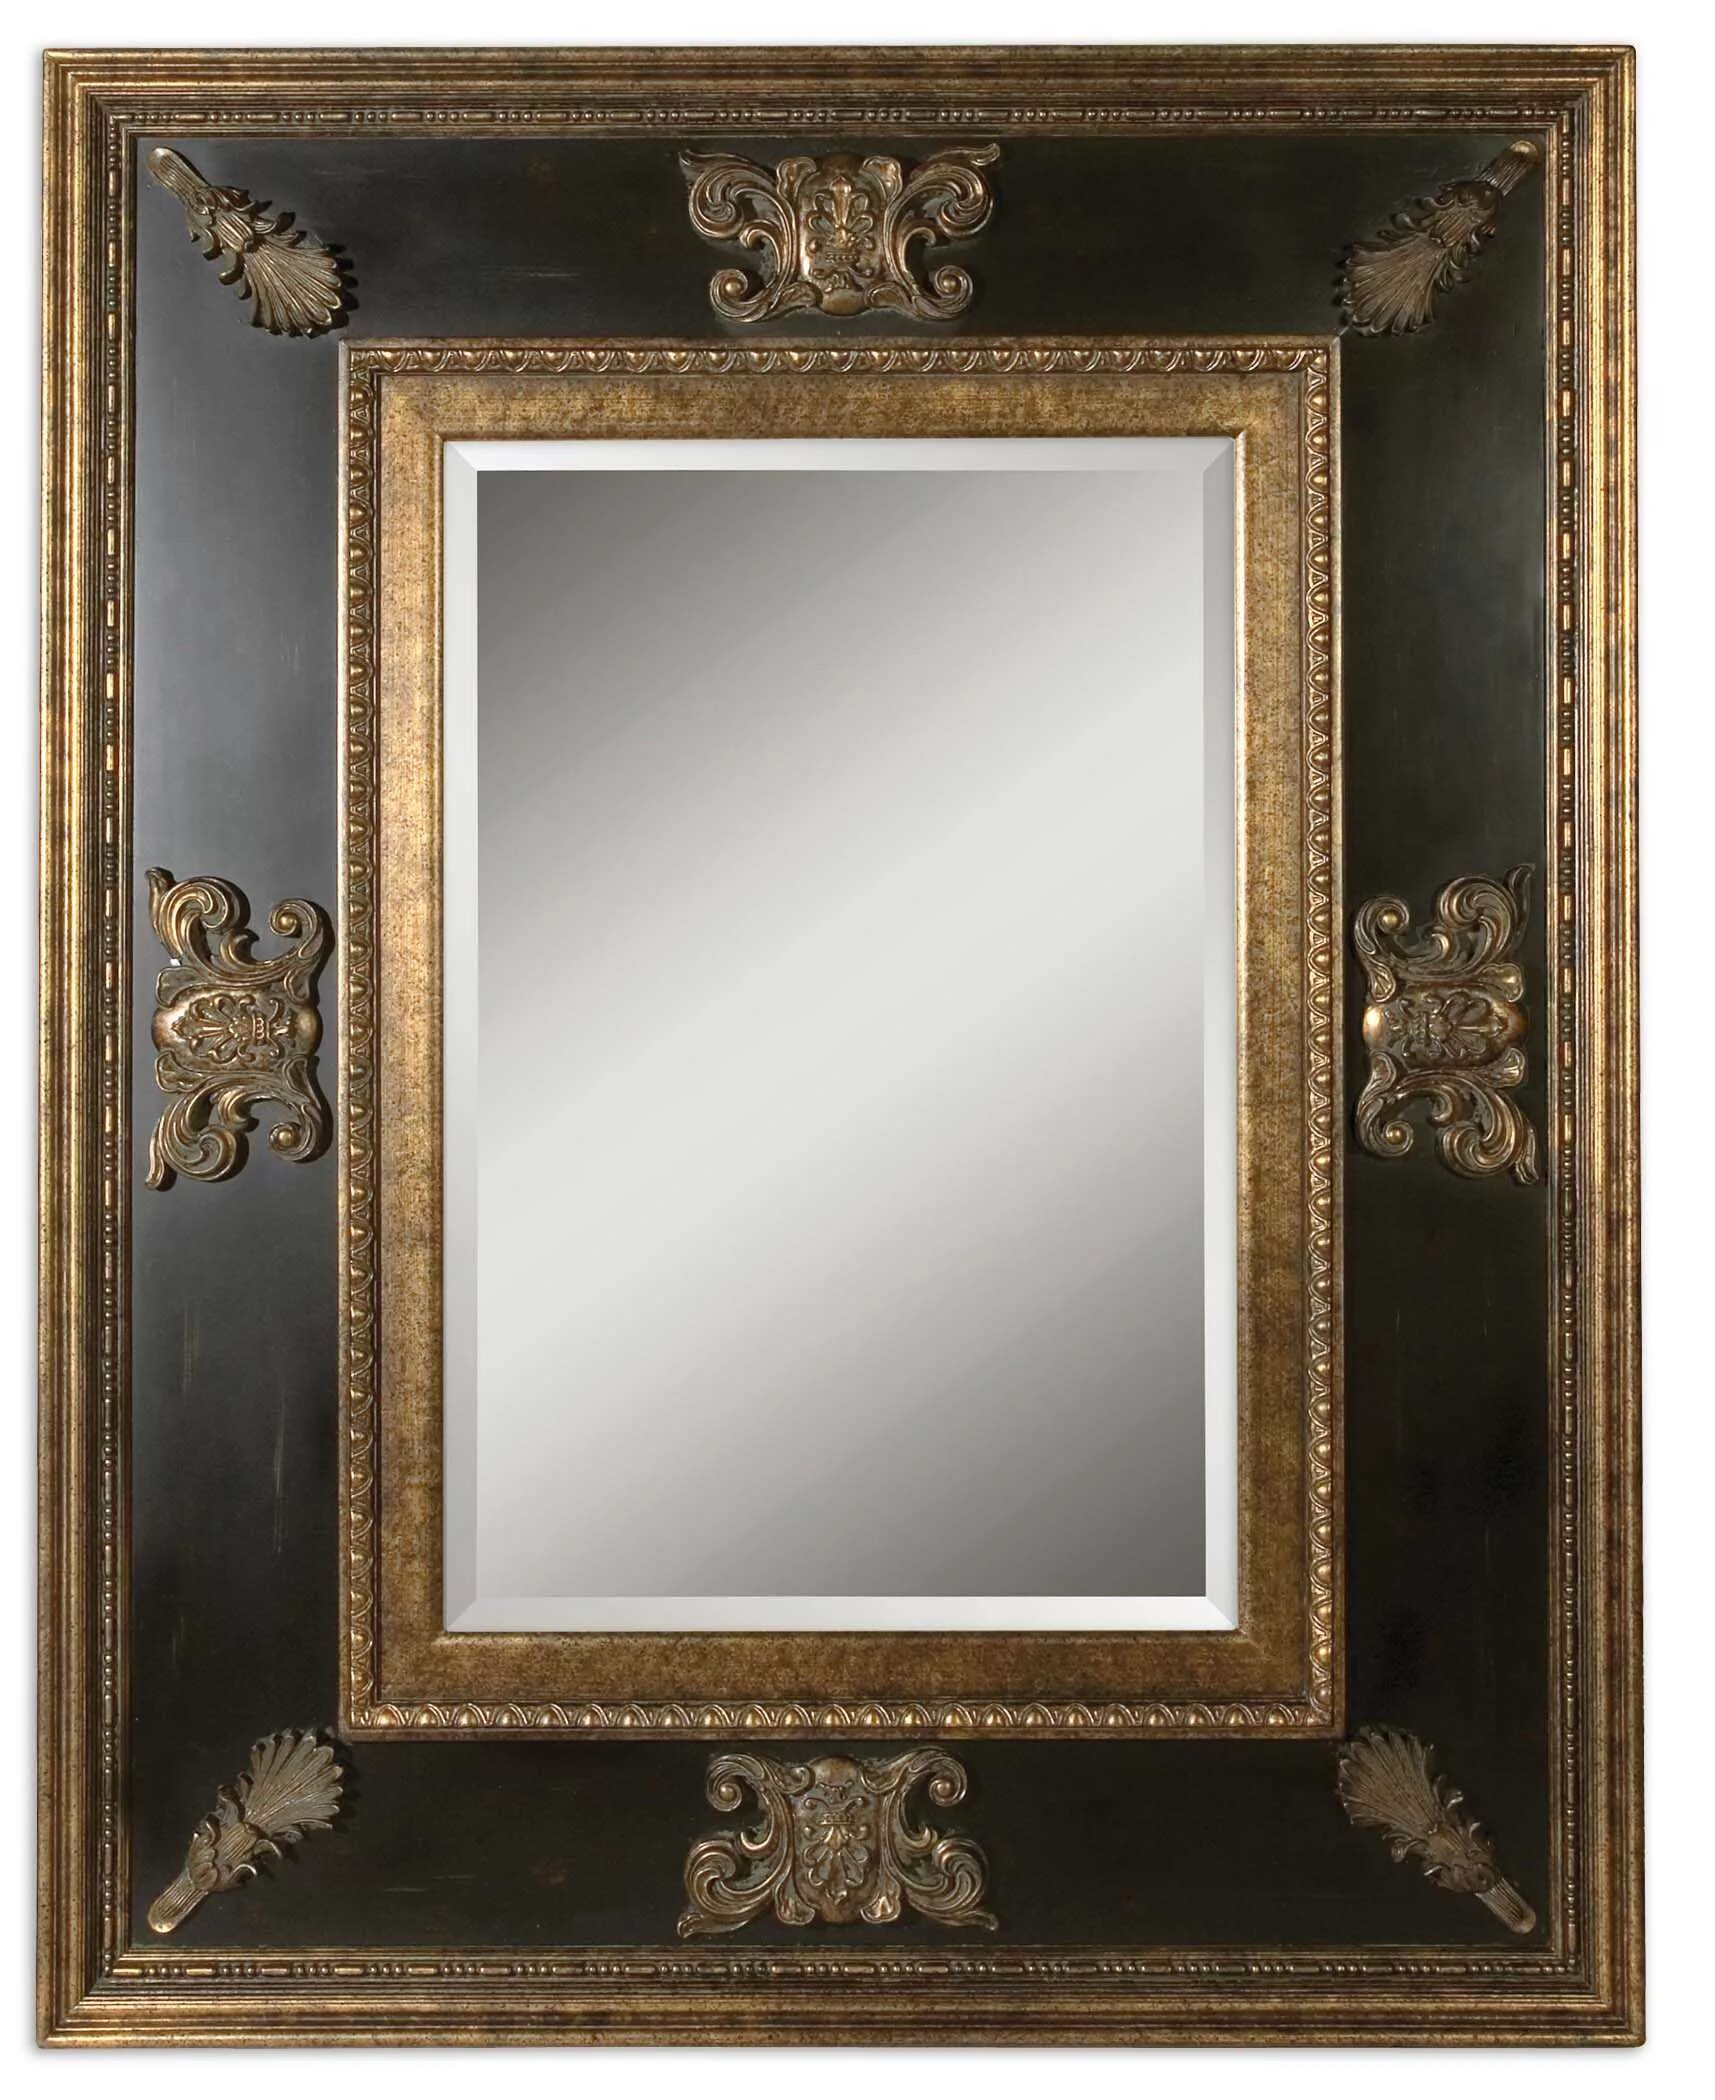 Зеркала в раме в спб. Зеркало в раме Uttermost 11173 b. B705-36 зеркало Ledelle. Зеркало Cadence 11173. Зеркало антик Голд.